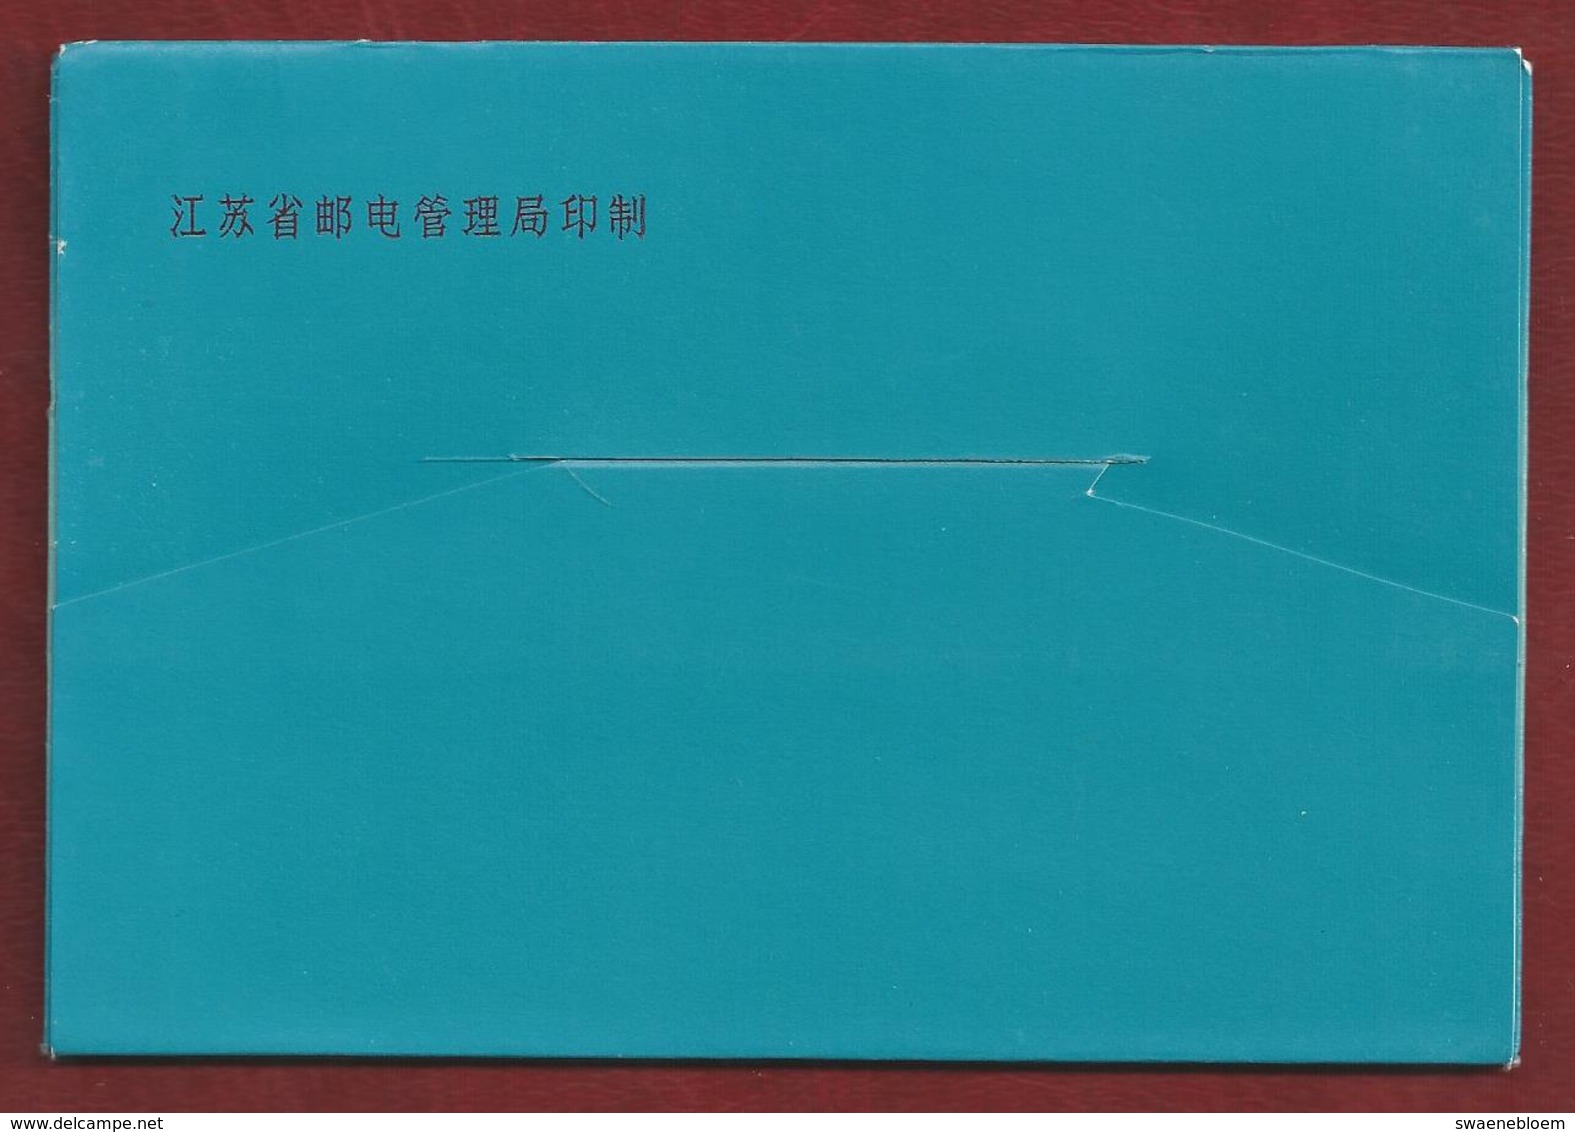 CN.- CHINAa. KIANGSU. 10 Kunst kaarten met omslag. 10 Art cards with Envelope.